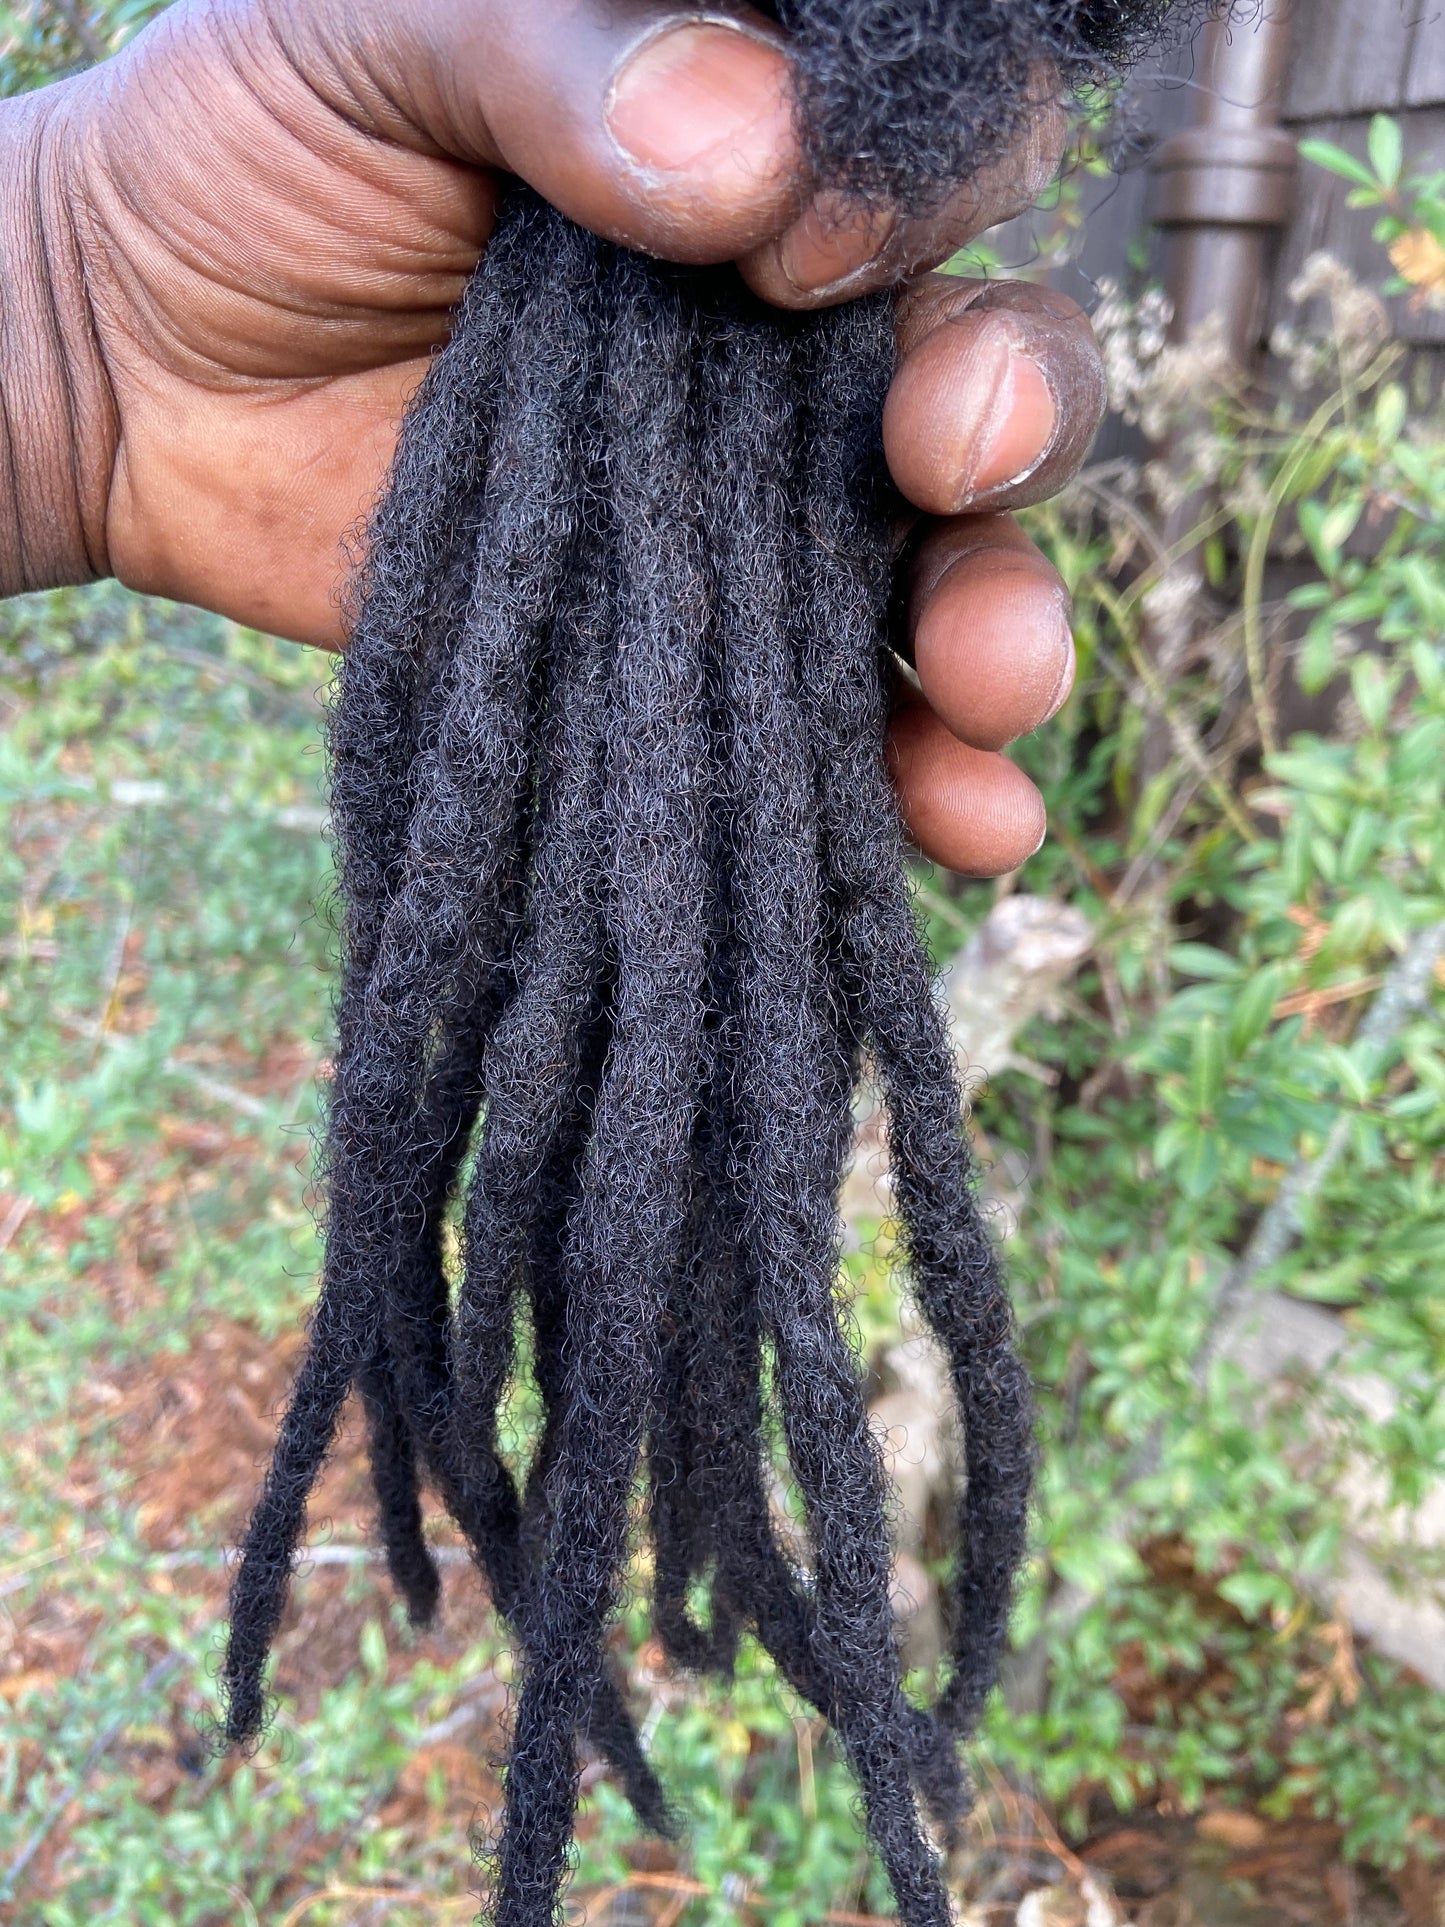 8 -20 Dreadlocks 100% Human Hair Handmade Jamaican Braided Dread Hair  Extension